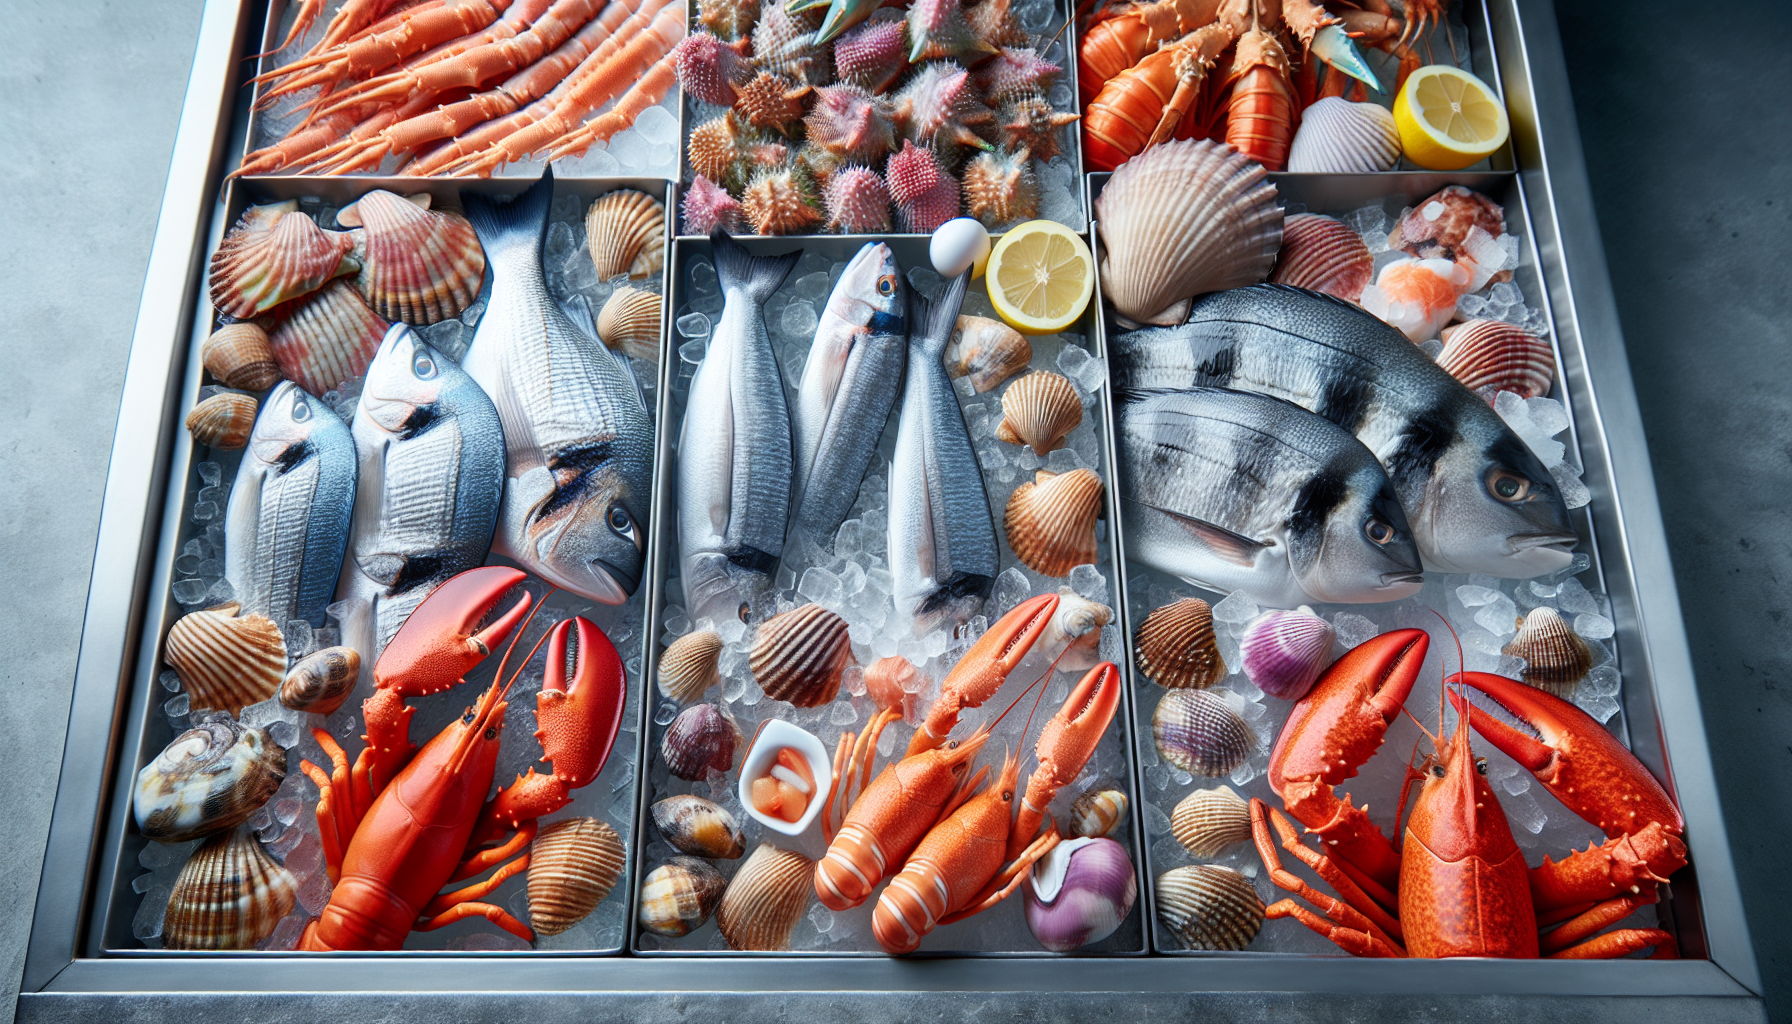 Sự lựa chọn hải sản tươi ngon, không bị ô nhiễm hay hỏng sẽ đảm bảo an toàn cho món ăn của bạn.